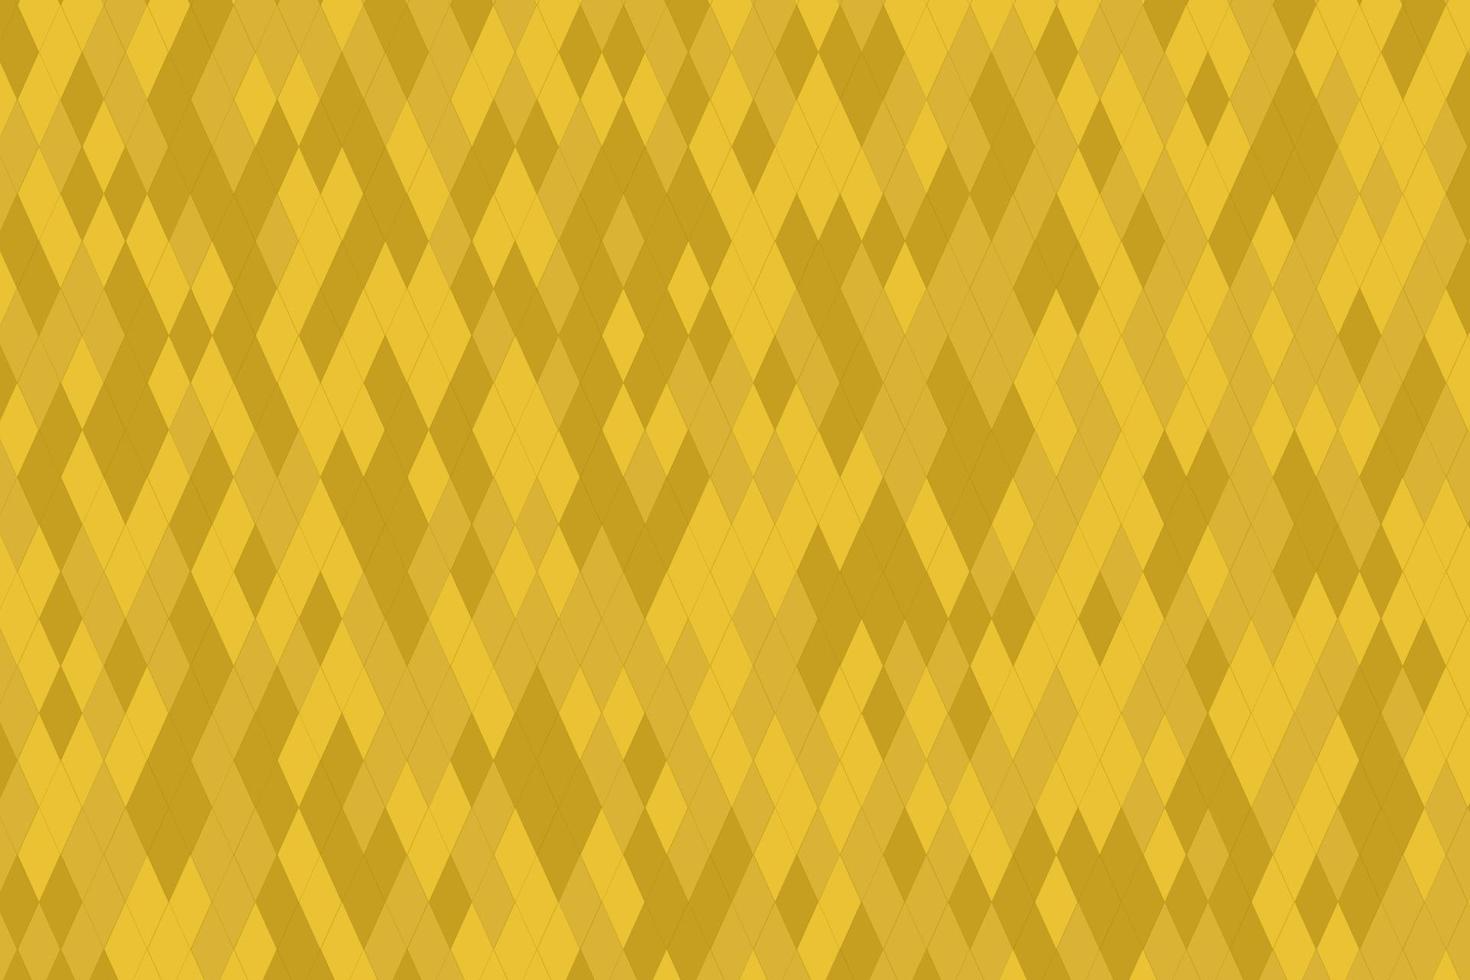 sin fisuras con elementos geométricos en tonos amarillo dorado. fondo degradado abstracto vector